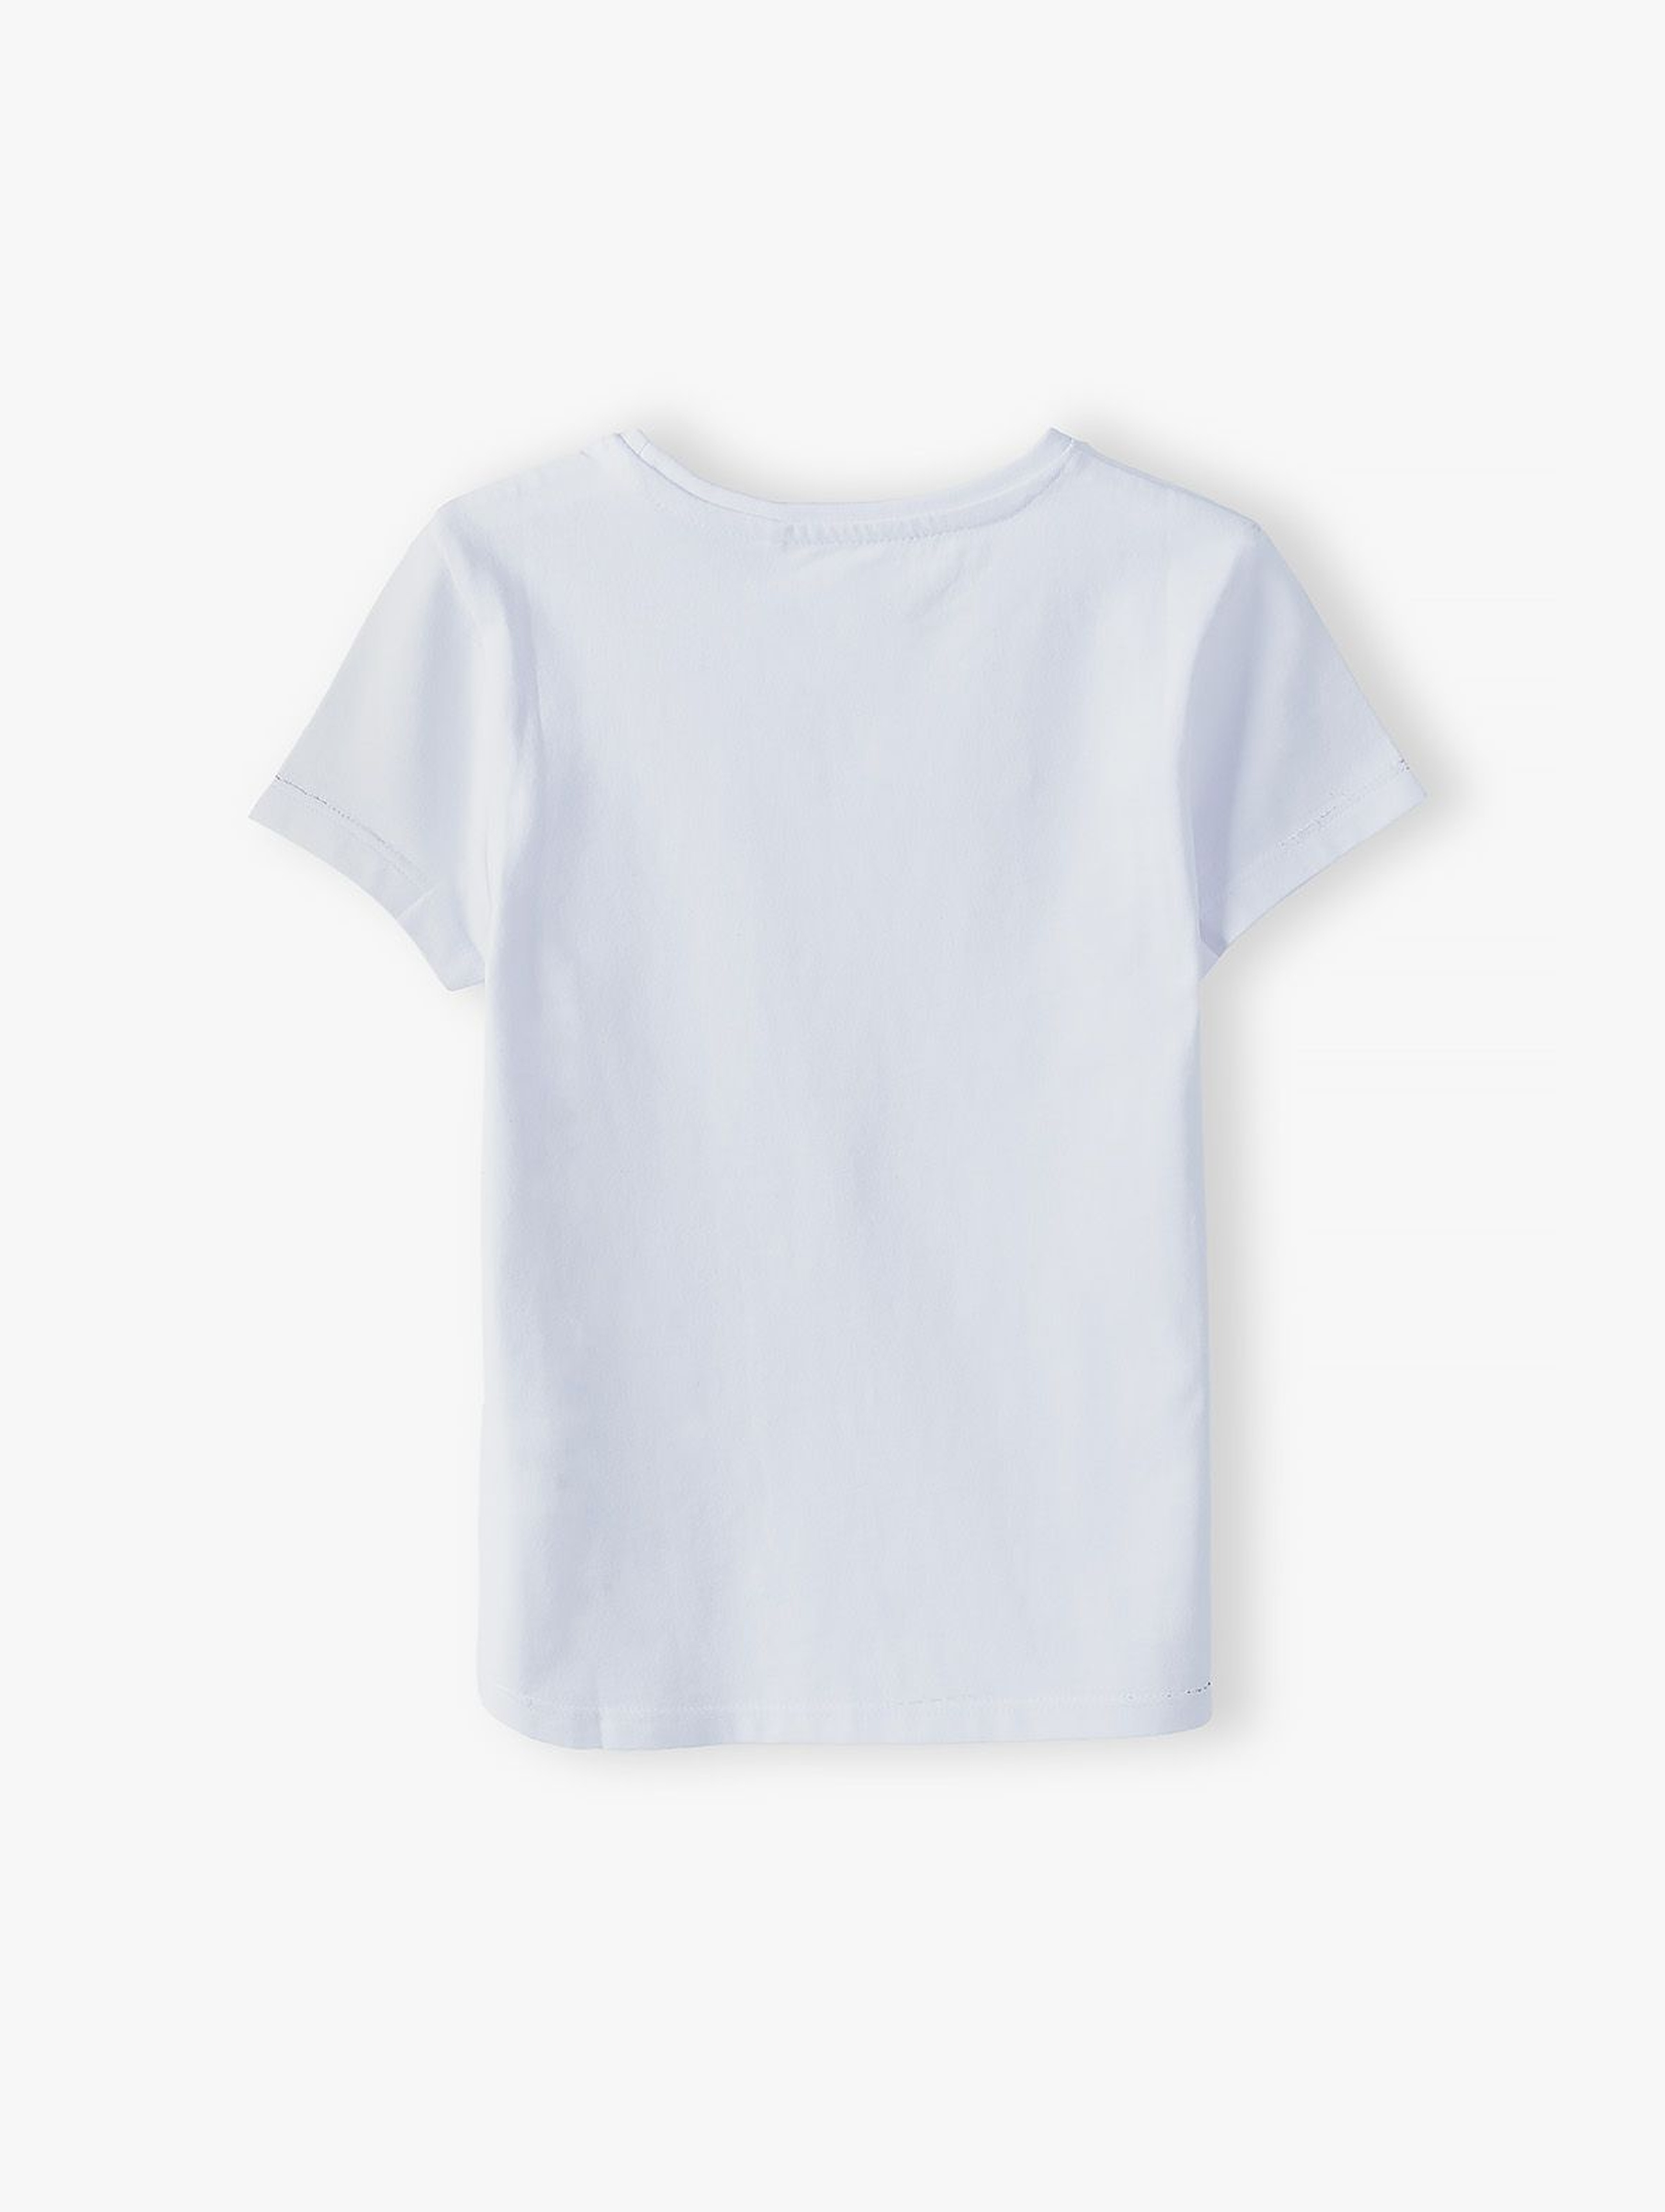 Biały t-shirt dziewczęcy - Córka ubrania dla całej rodziny